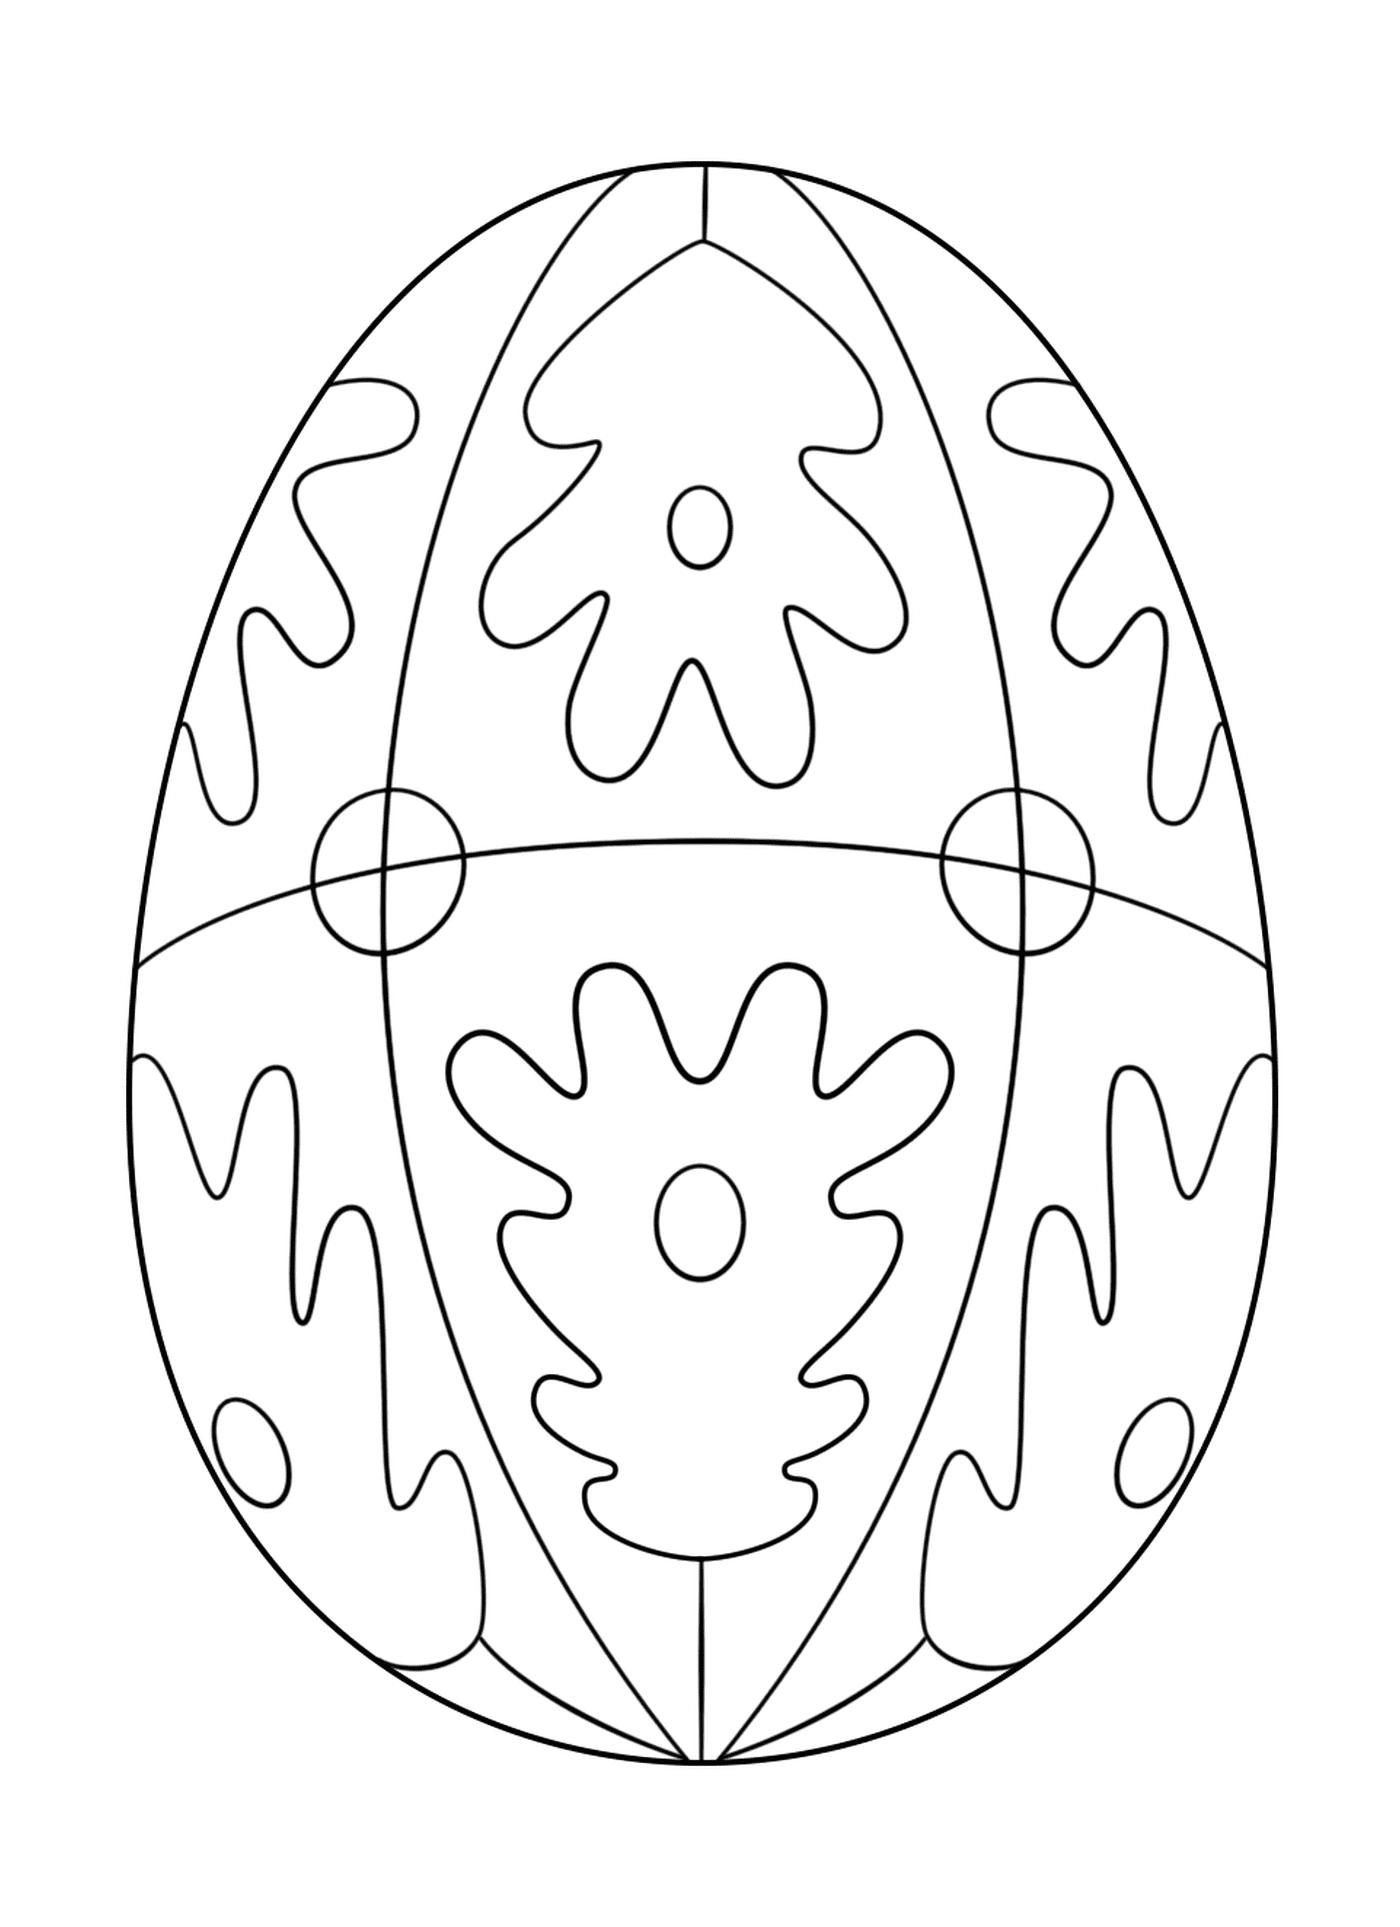  Huevo de Pascua con patrón geométrico 